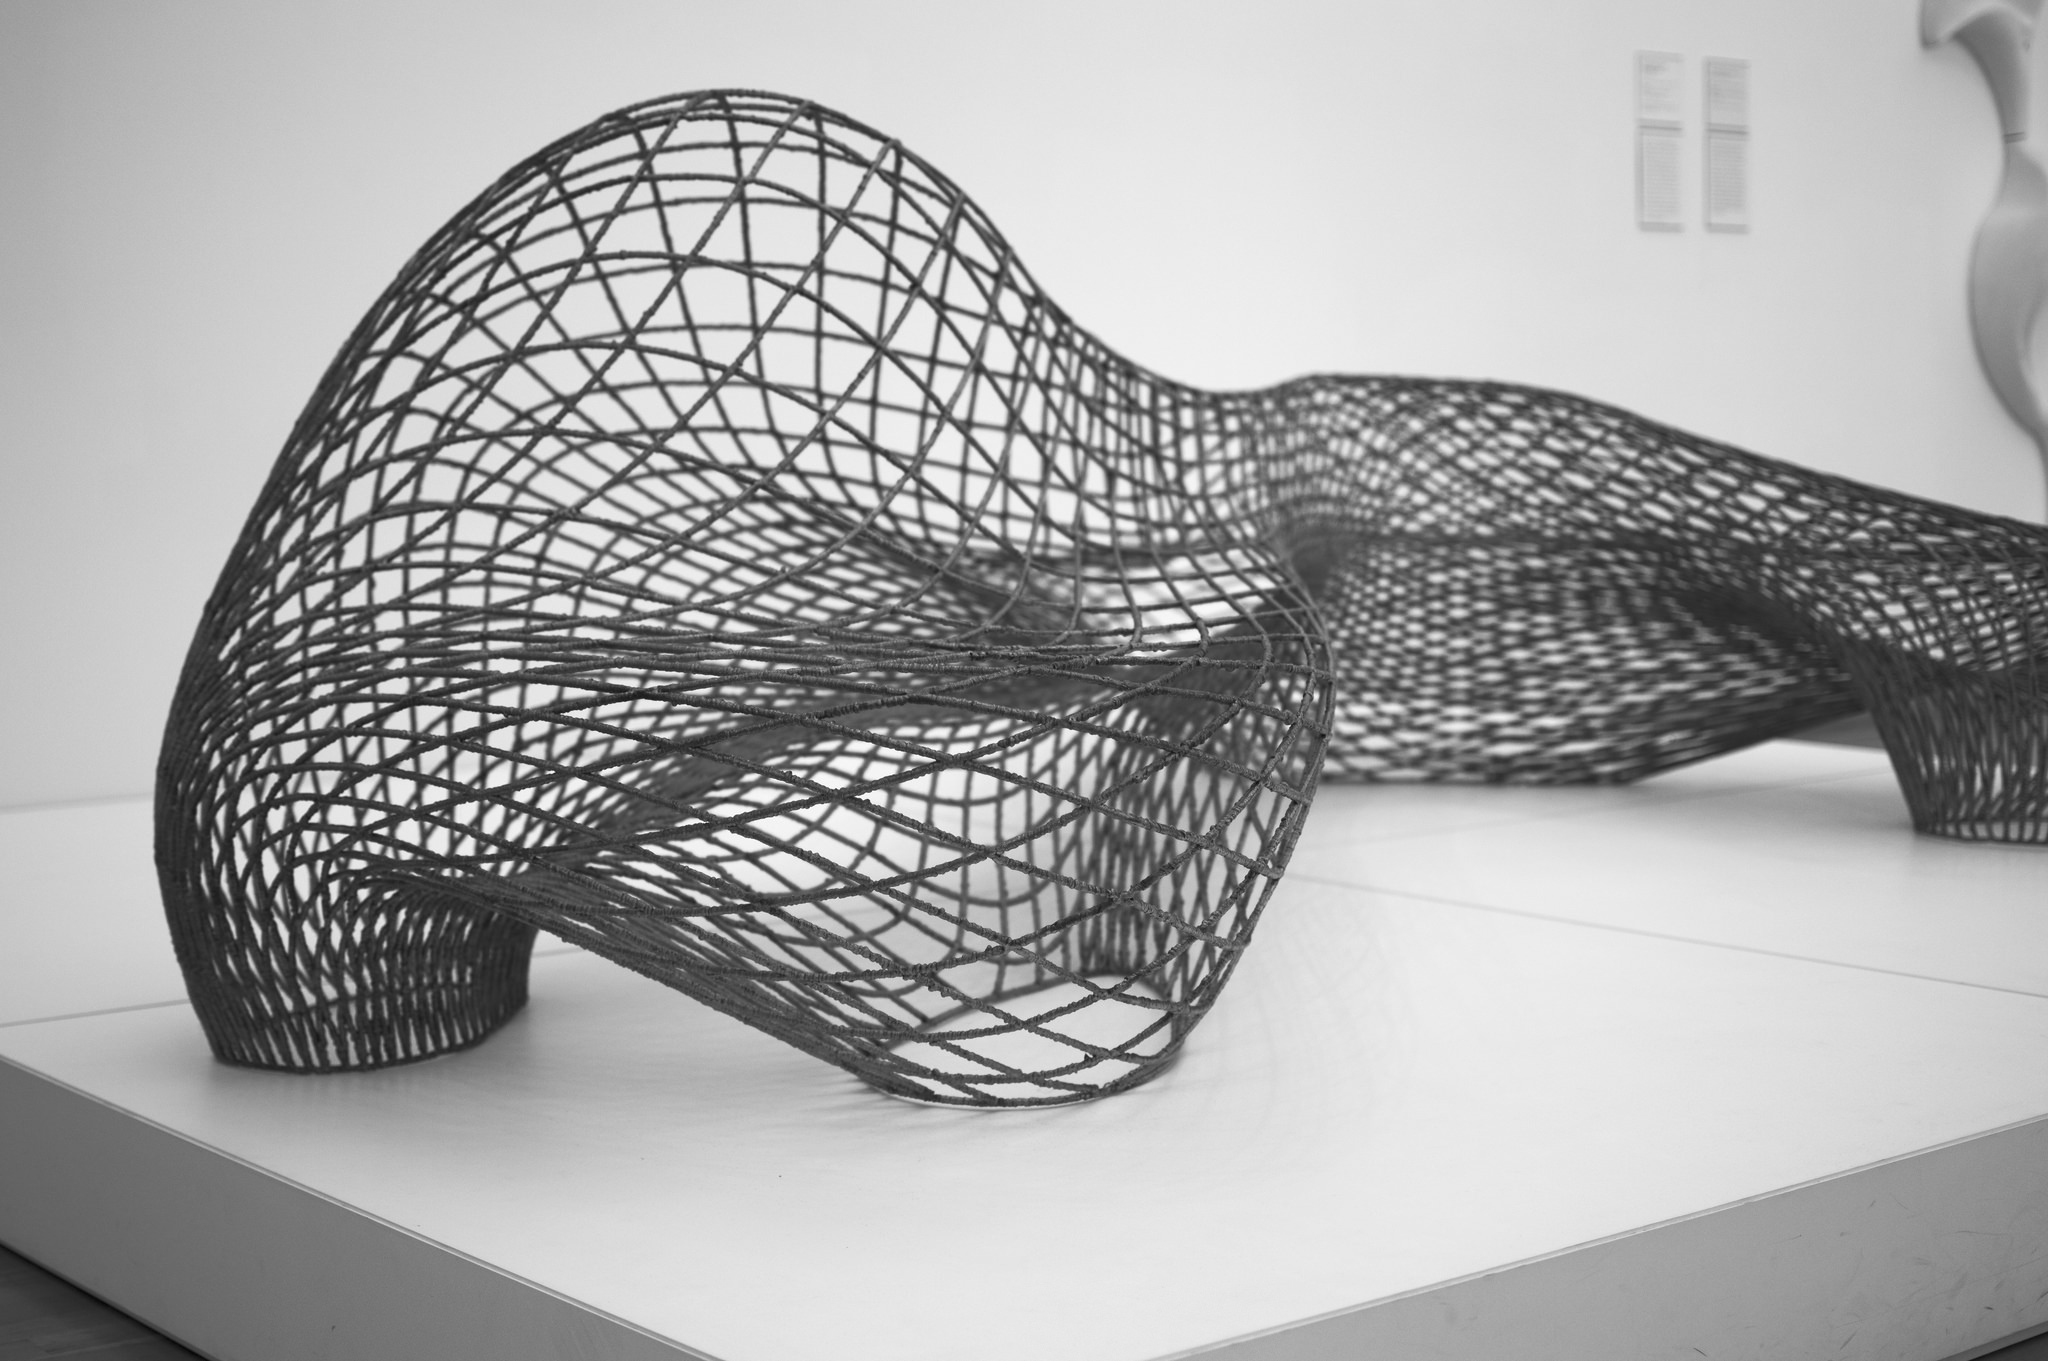 3D printing barcelona and mexico, curso impresion 3d barcelona mexico, Design Miami, diseño parametrico barcelona mexico